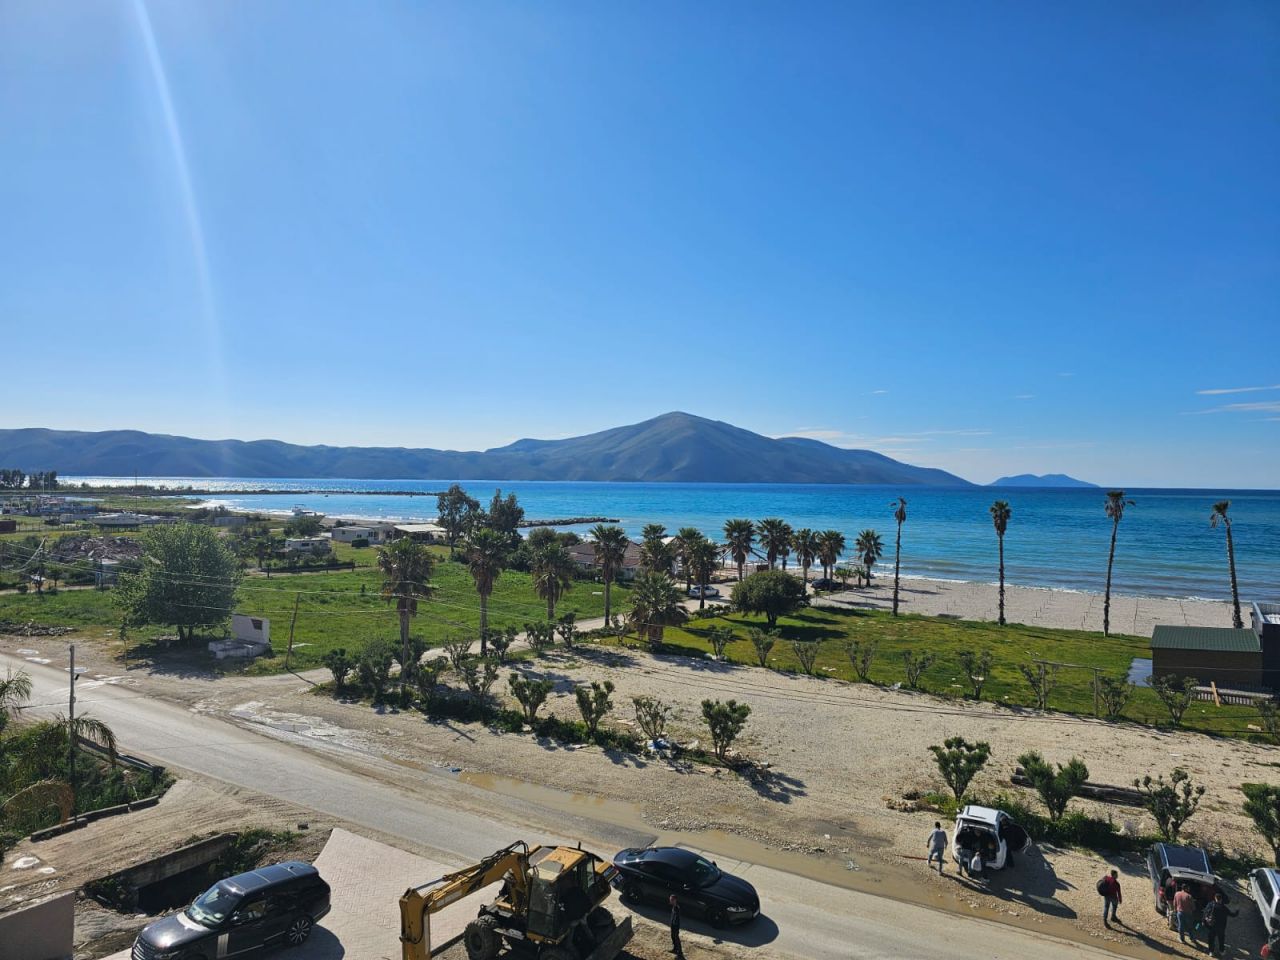  Mieszkanie Na Sprzedaż We Wlorze W Albanii, Położone W Panoramicznej Okolicy, W Pobliżu Plaży